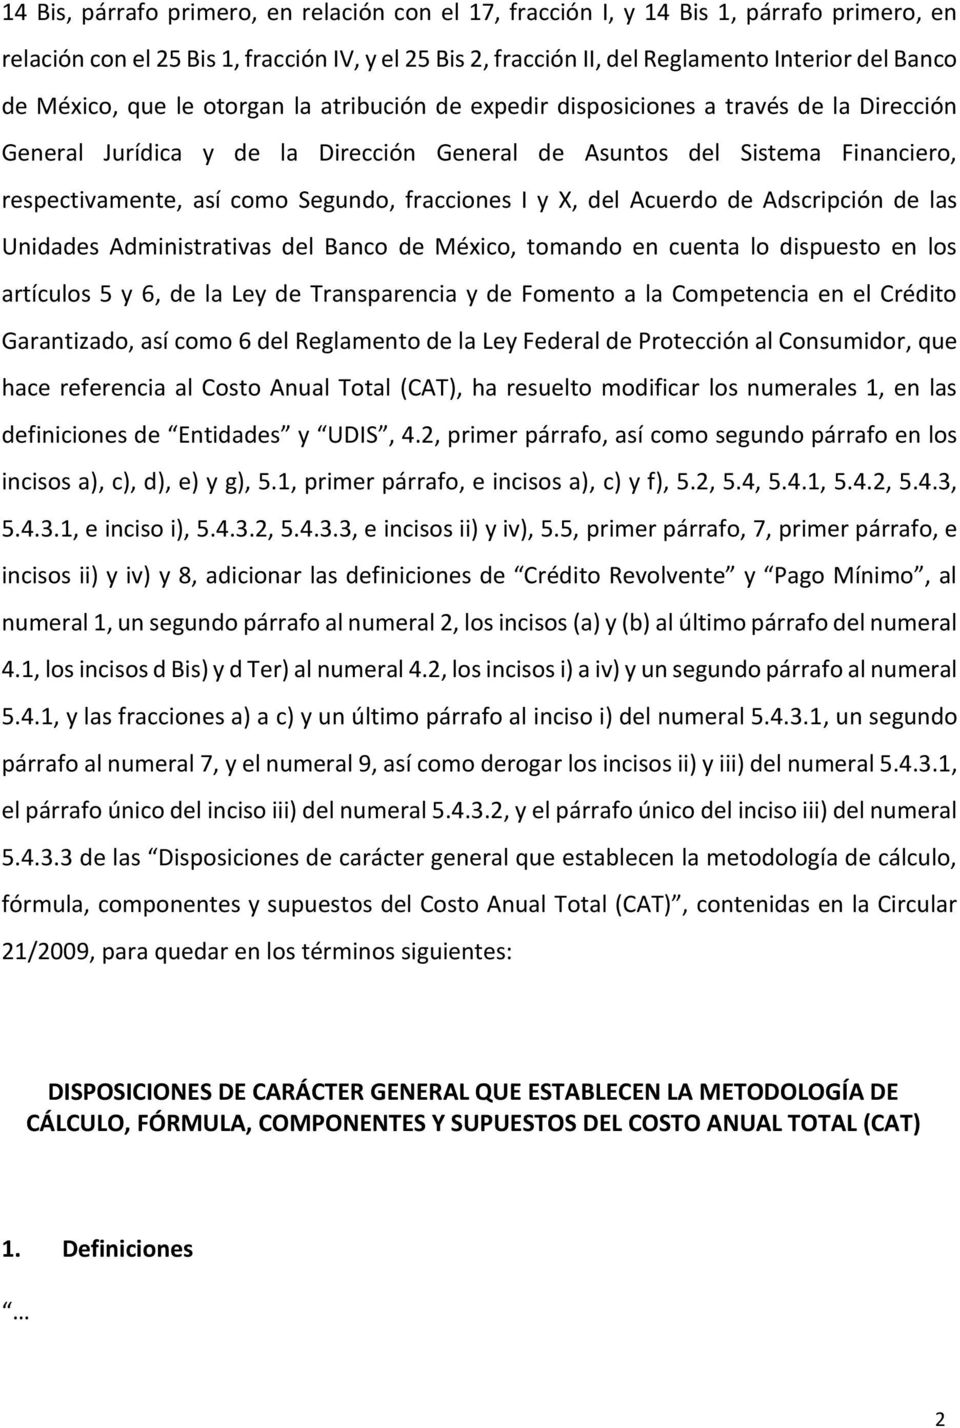 fracciones I y X, del Acuerdo de Adscripción de las Unidades Administrativas del Banco de México, tomando en cuenta lo dispuesto en los artículos 5 y 6, de la Ley de Transparencia y de Fomento a la